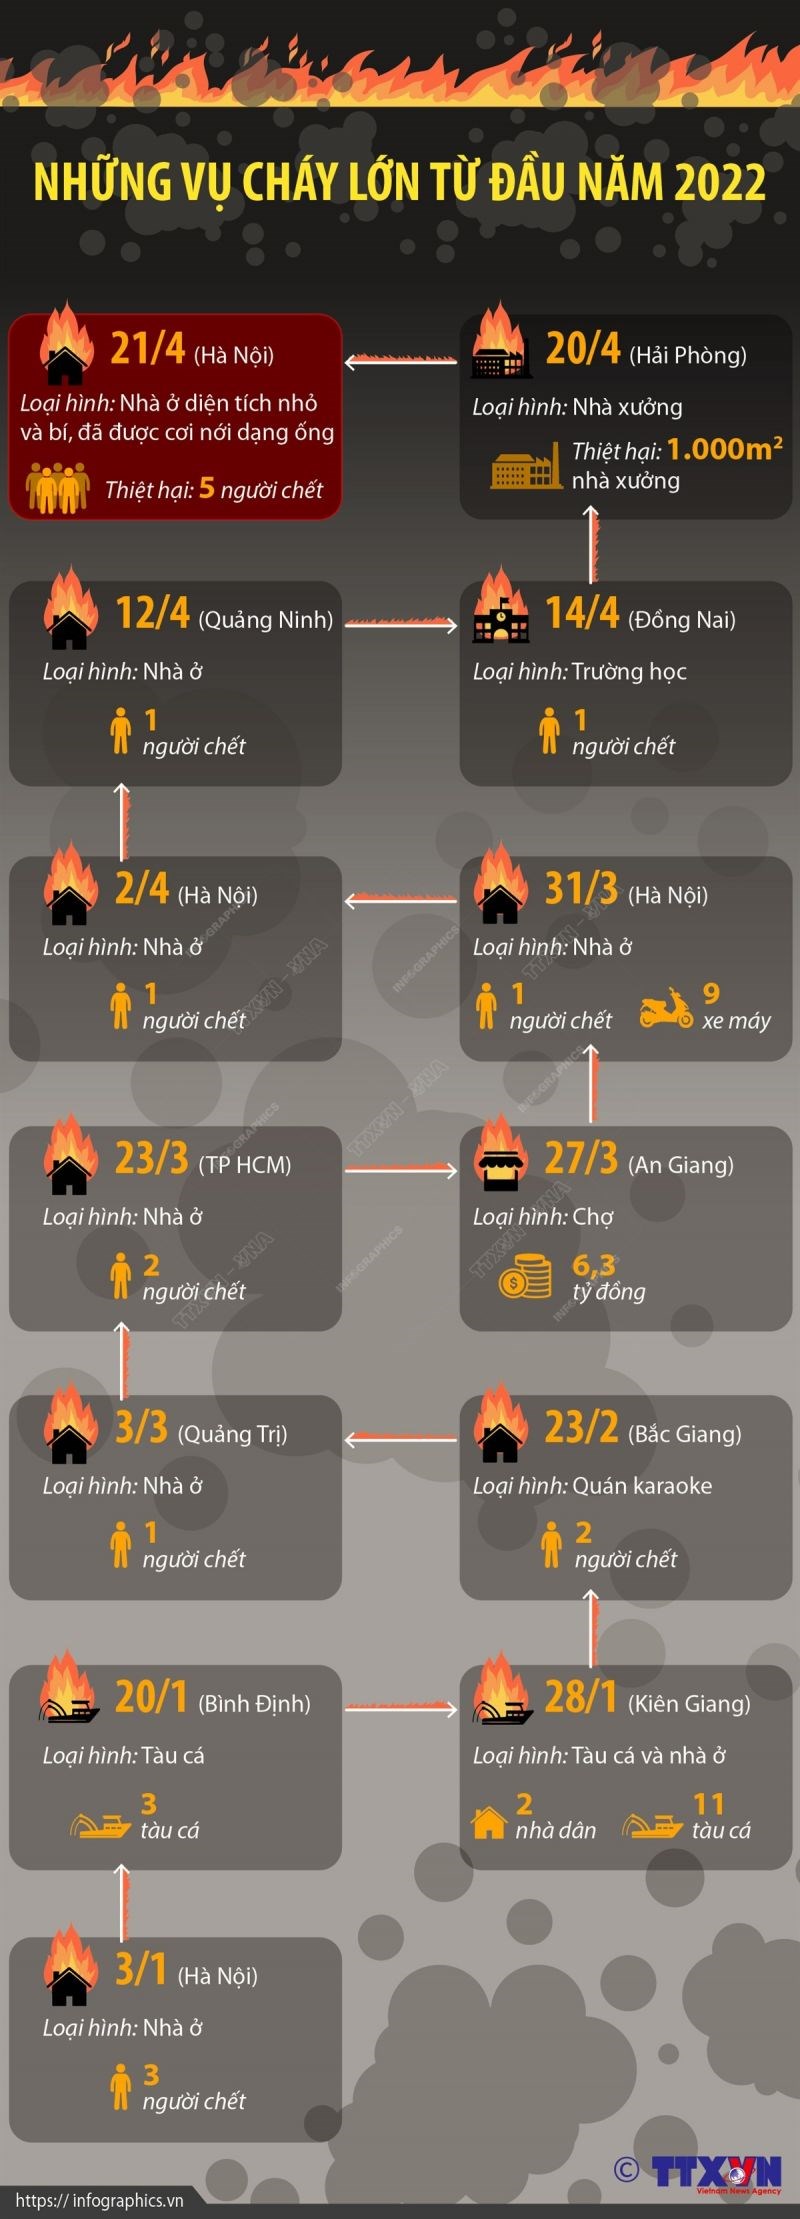 Rạng sáng 21/4/2022, một vụ cháy nhà gây hậu quả đặc biệt nghiêm trọng xảy ra tại phường Kim Liên, quận Đống Đa, Hà Nội khiến 5 người trong một gia đình tử vong. Từ đầu năm 2022, cả nước đã xảy ra hàng chục vụ cháy lớn nhỏ, trong đó có những vụ cháy thương tâm gây thiệt hại về người.